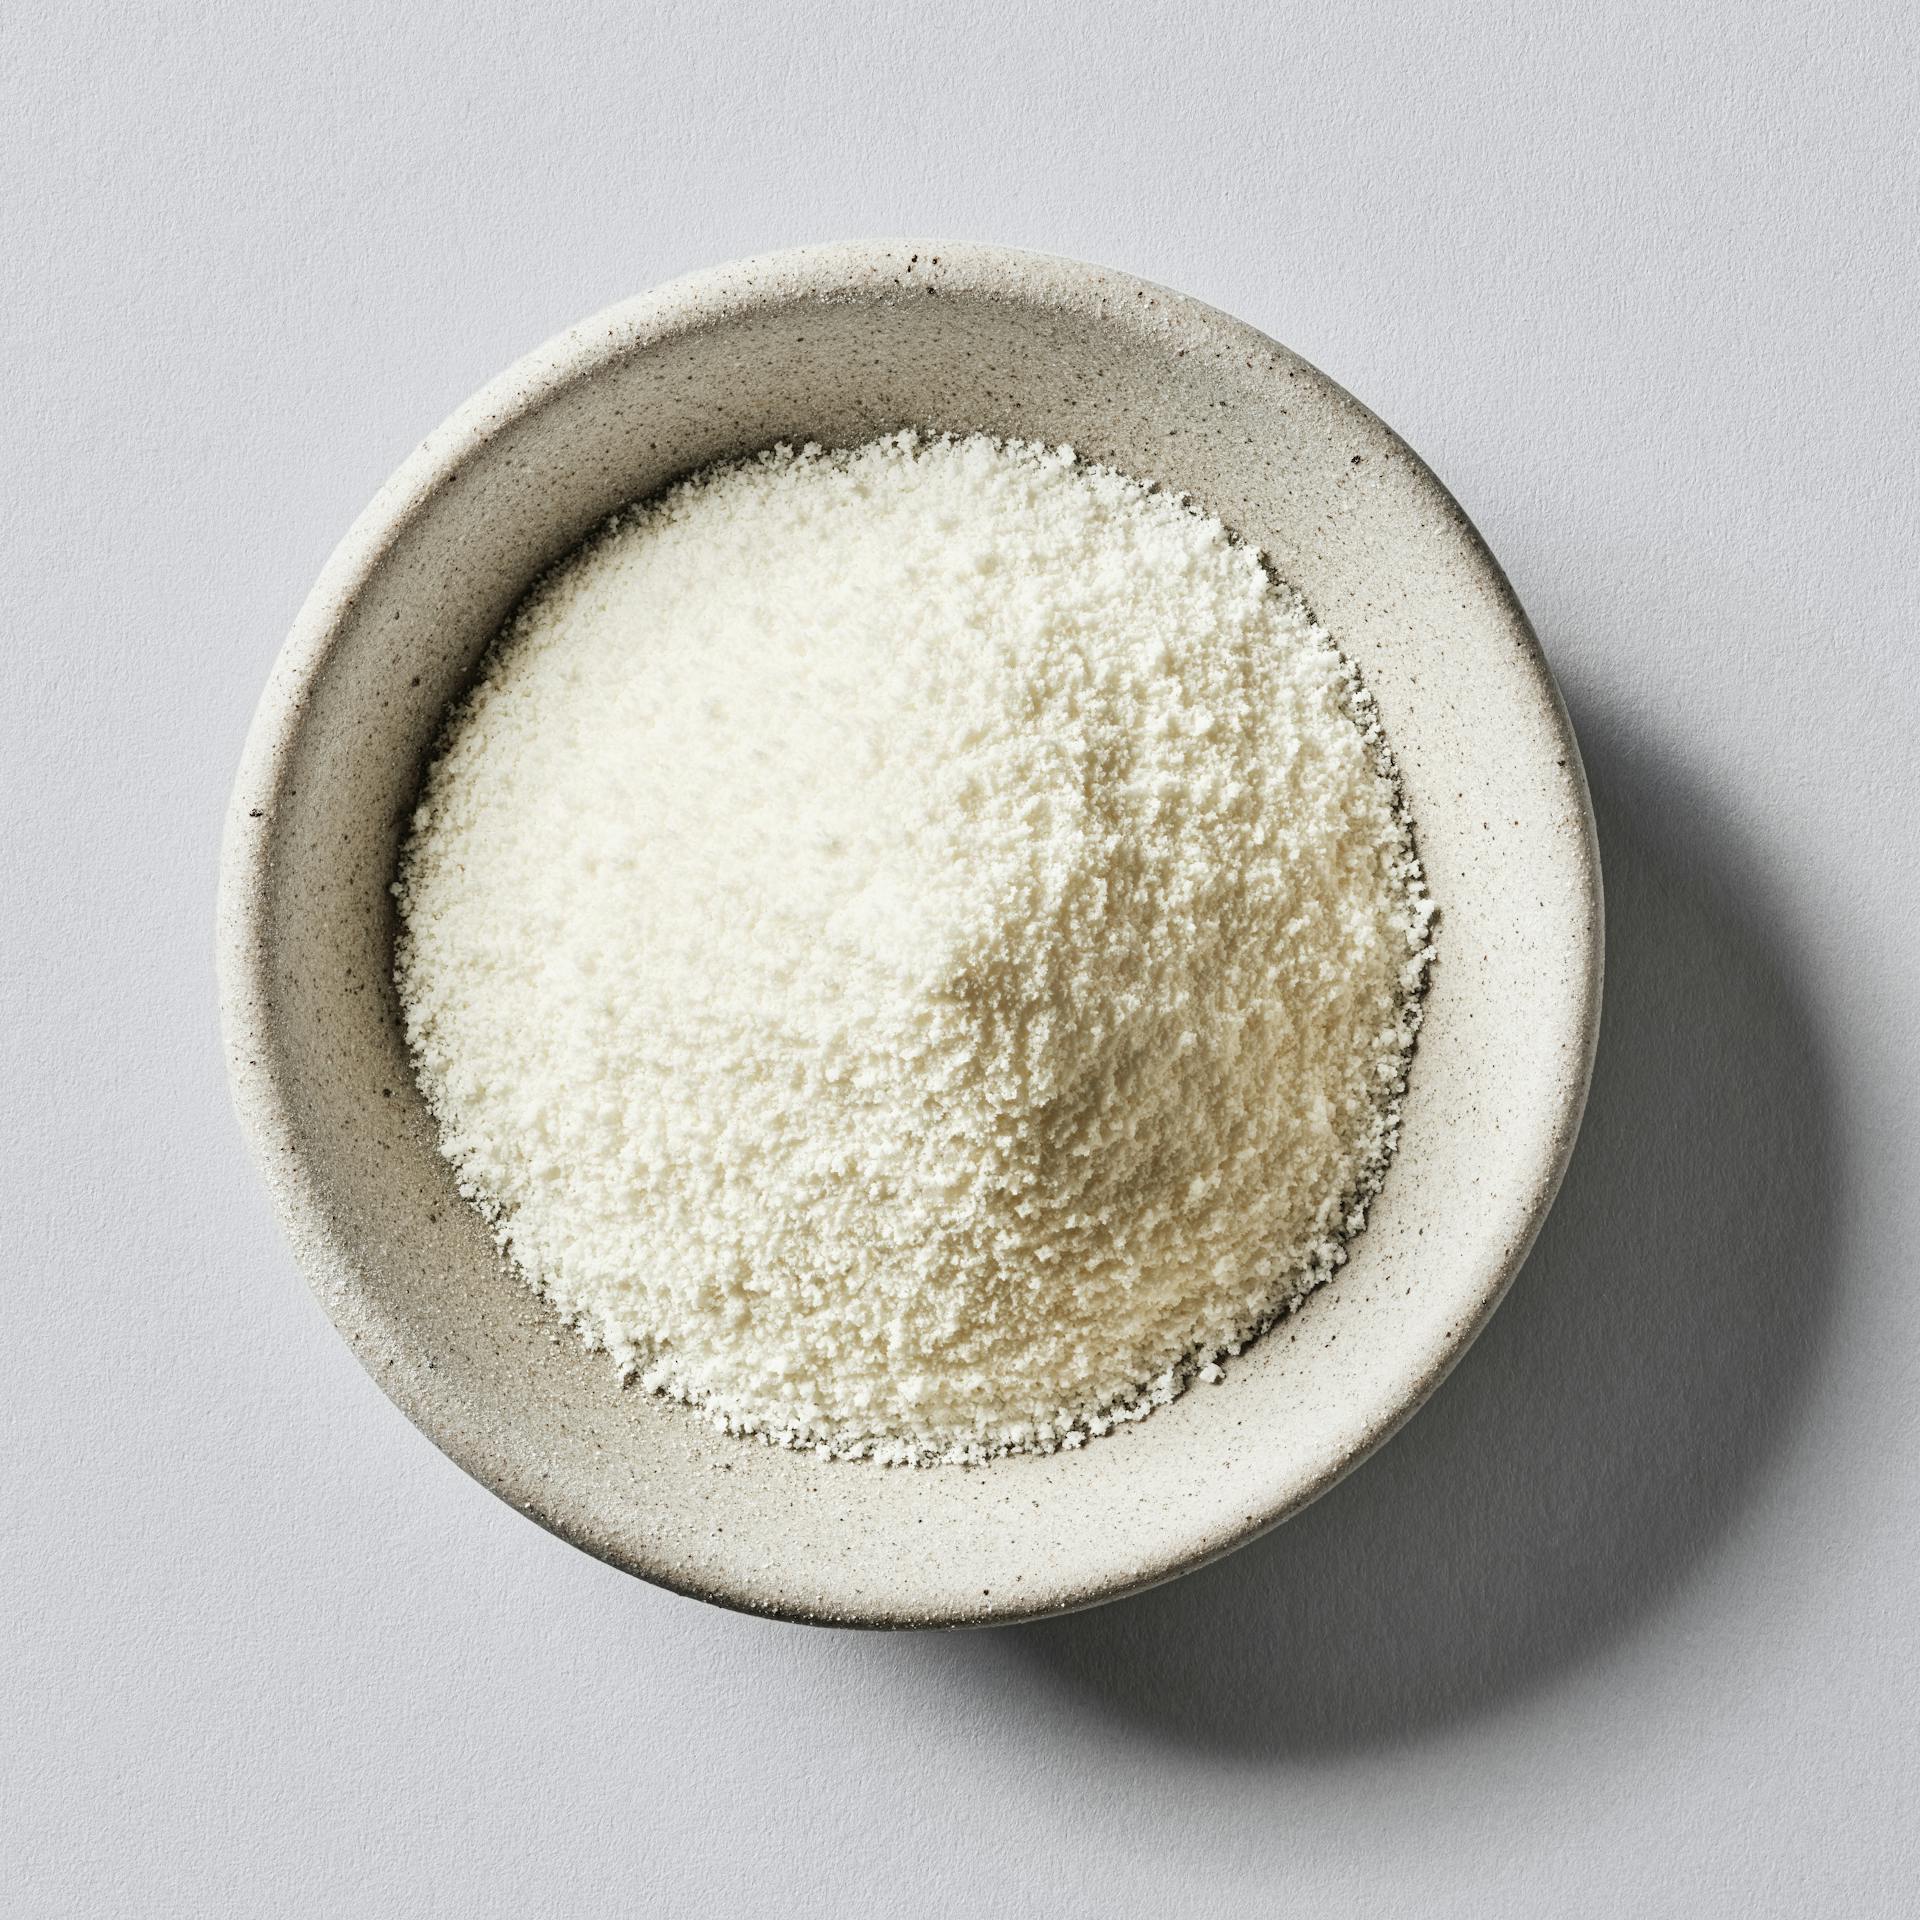 Gelatin Powder product image.